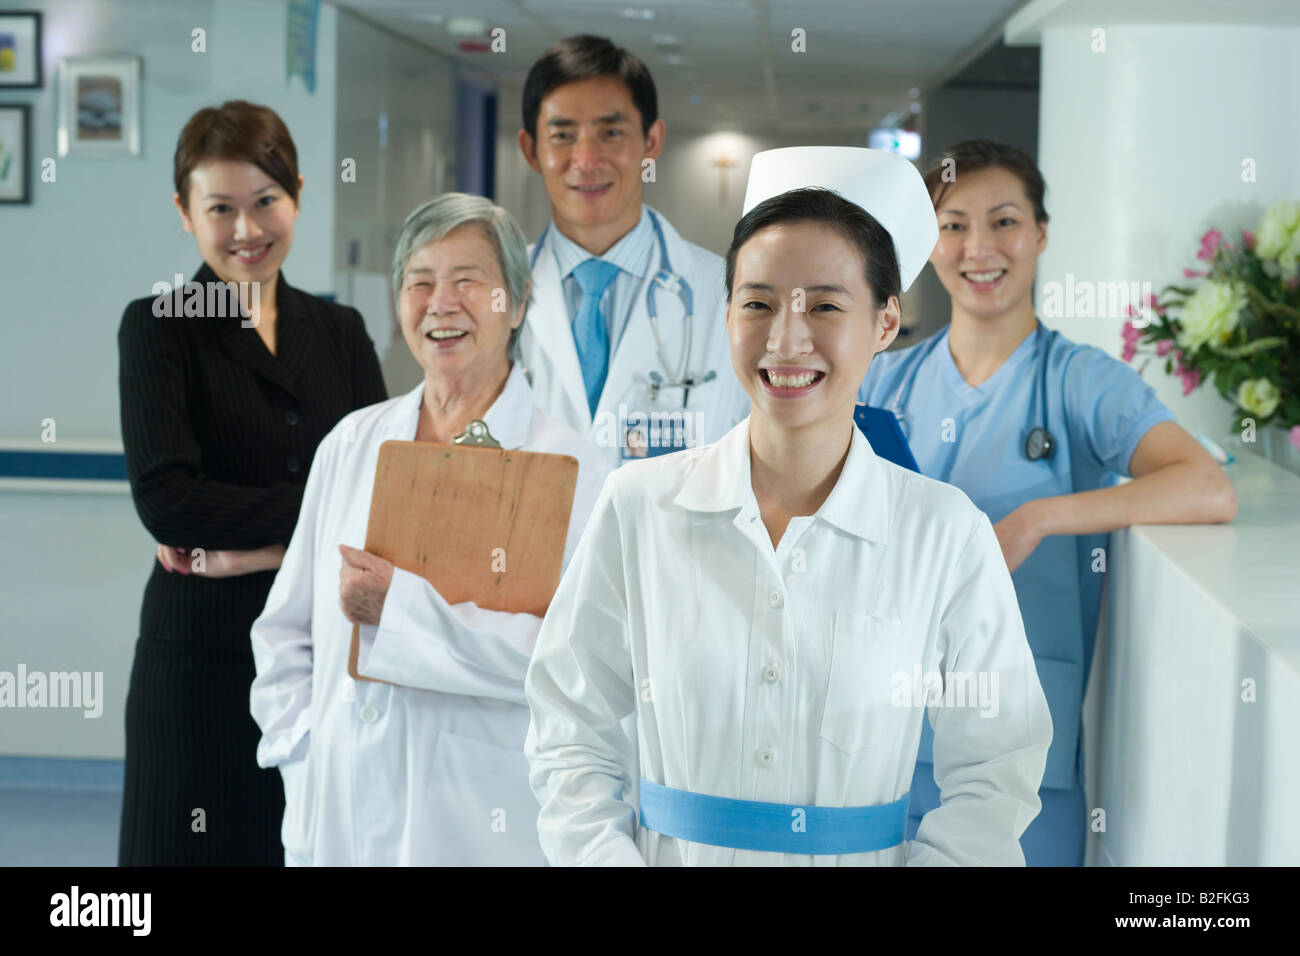 Portrait of medical staff debout dans un couloir et smiling Banque D'Images